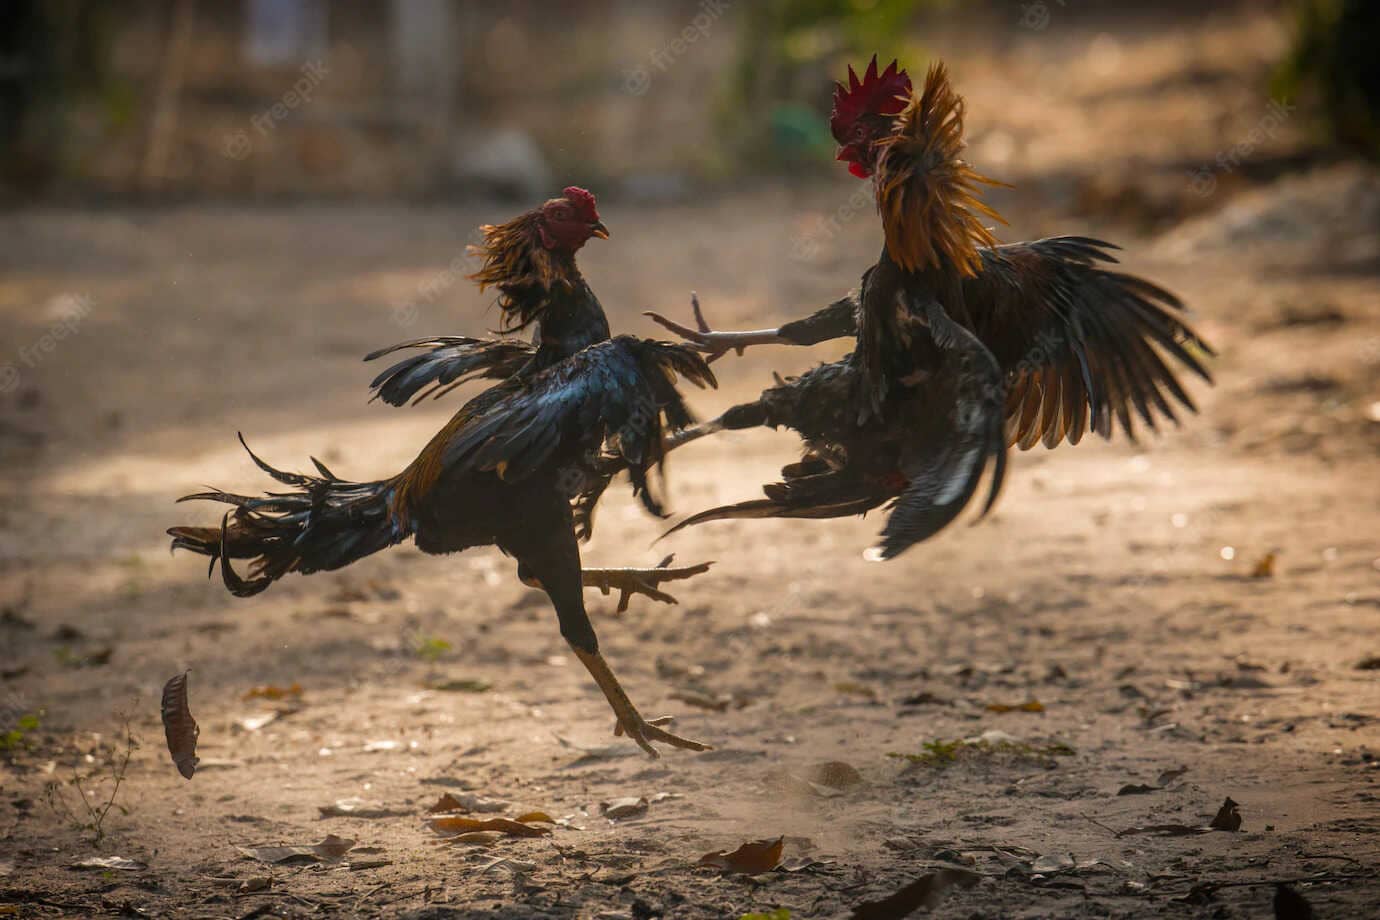 Đá gà Campuchia được biết đến như một trò chơi hợp pháp